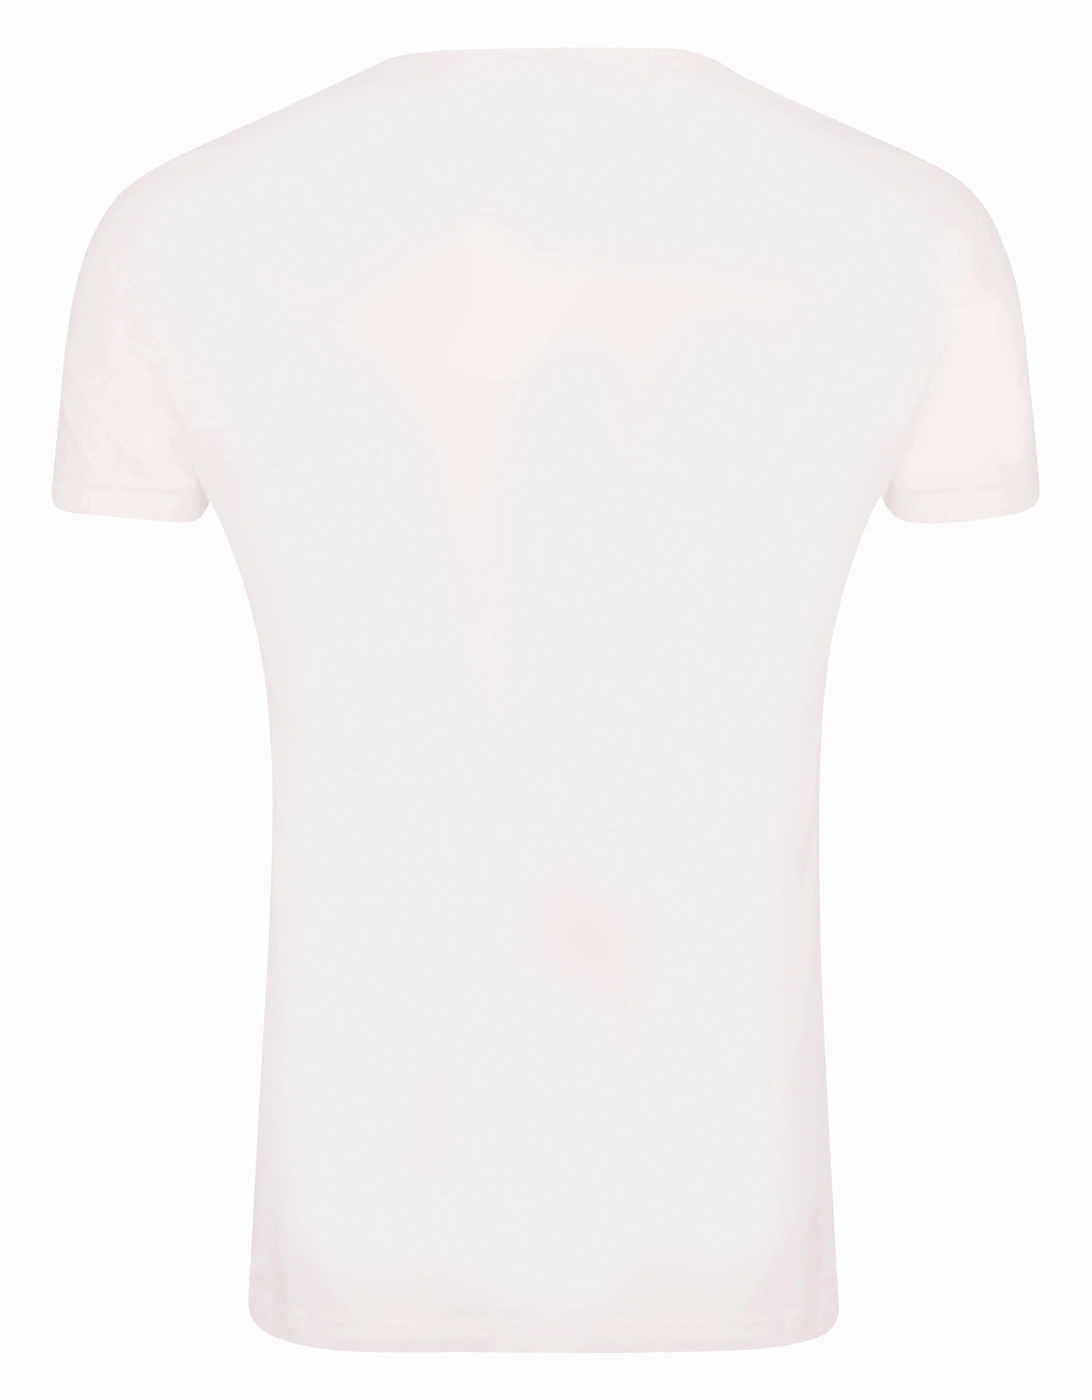 Unisex Adult Merry Kissmas Cotton T-Shirt